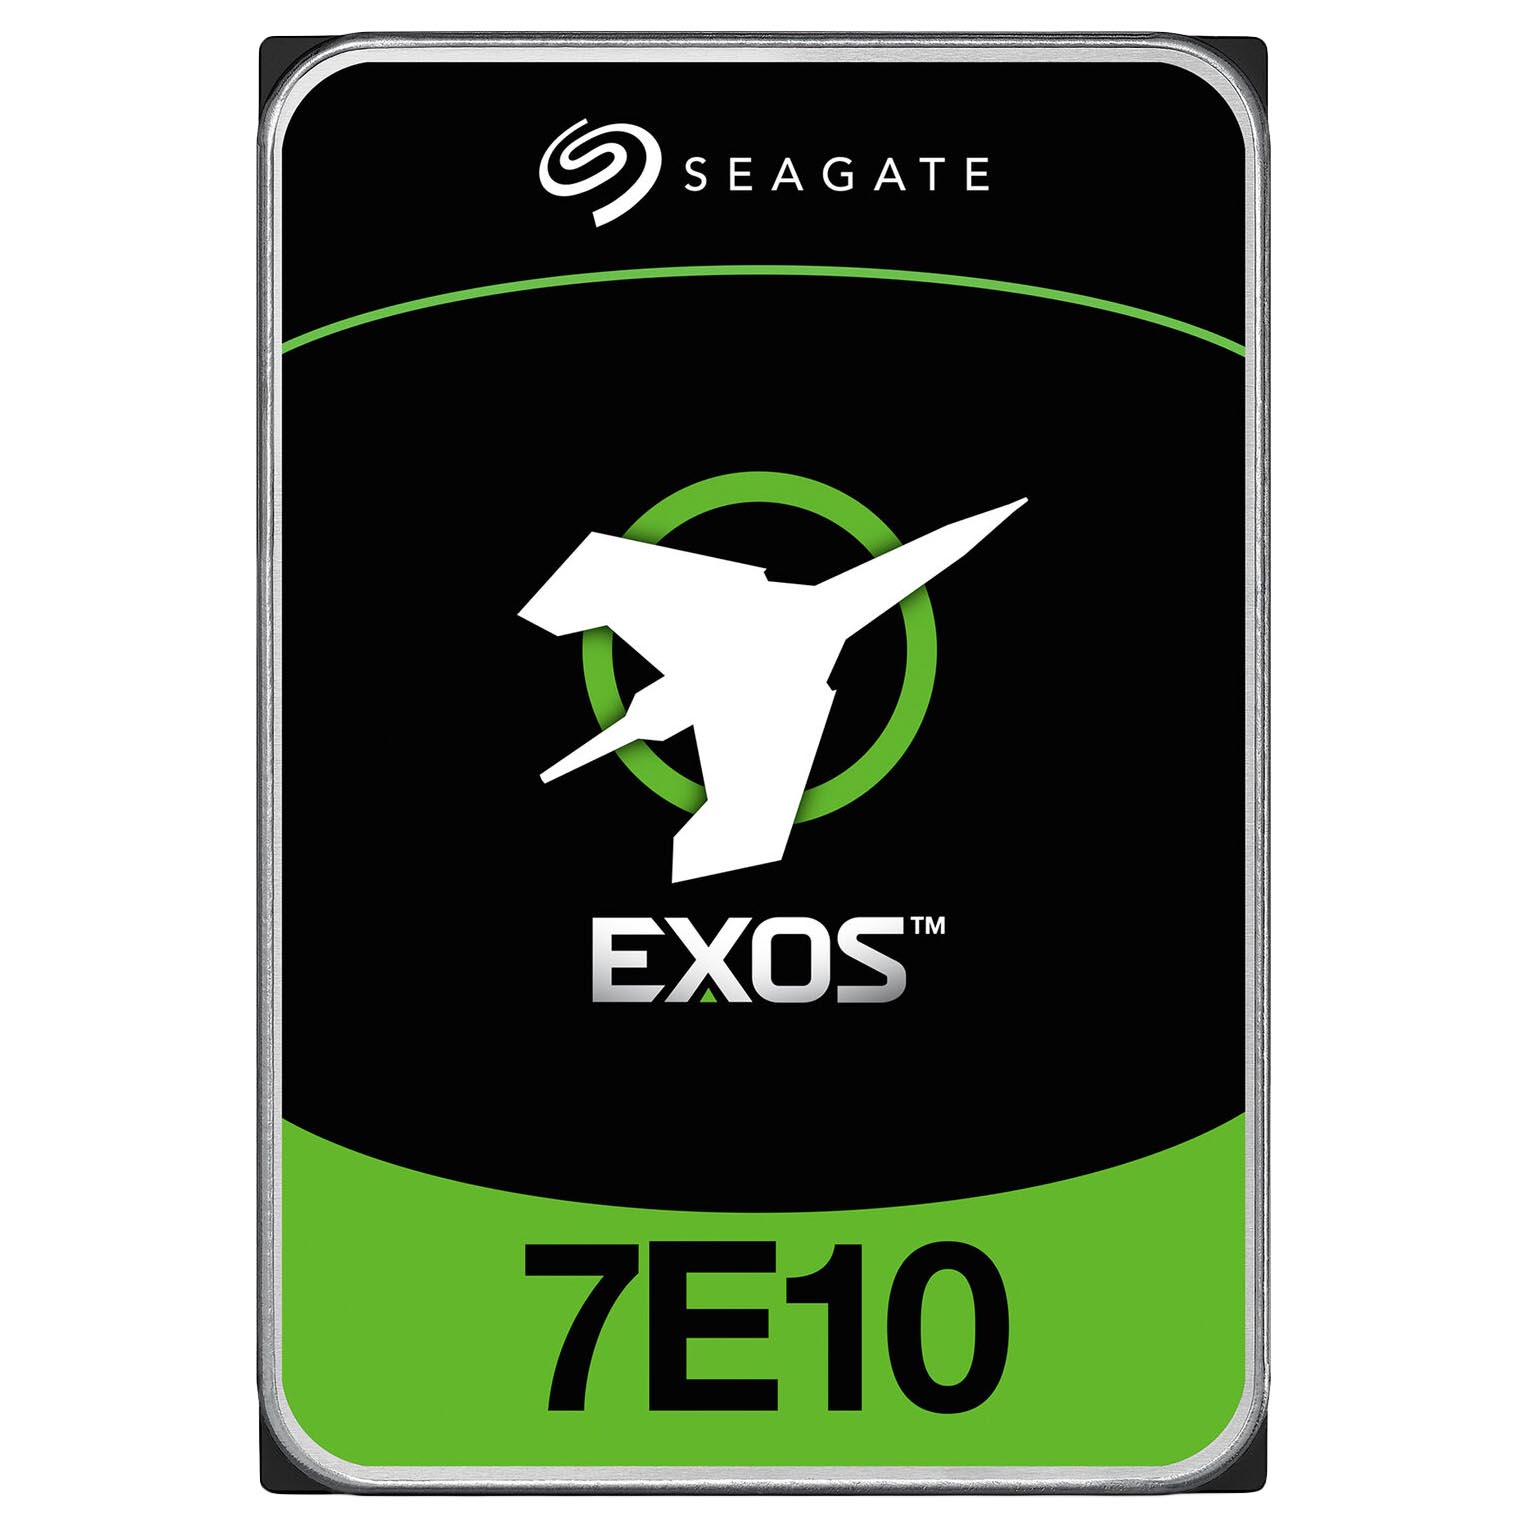 Внутренний жесткий диск Seagate Exos 7E10, ST8000NM017B, 8 Тб жёсткий диск seagate original st2000nm000b exos 7e10 2 тб sata iii 3 5